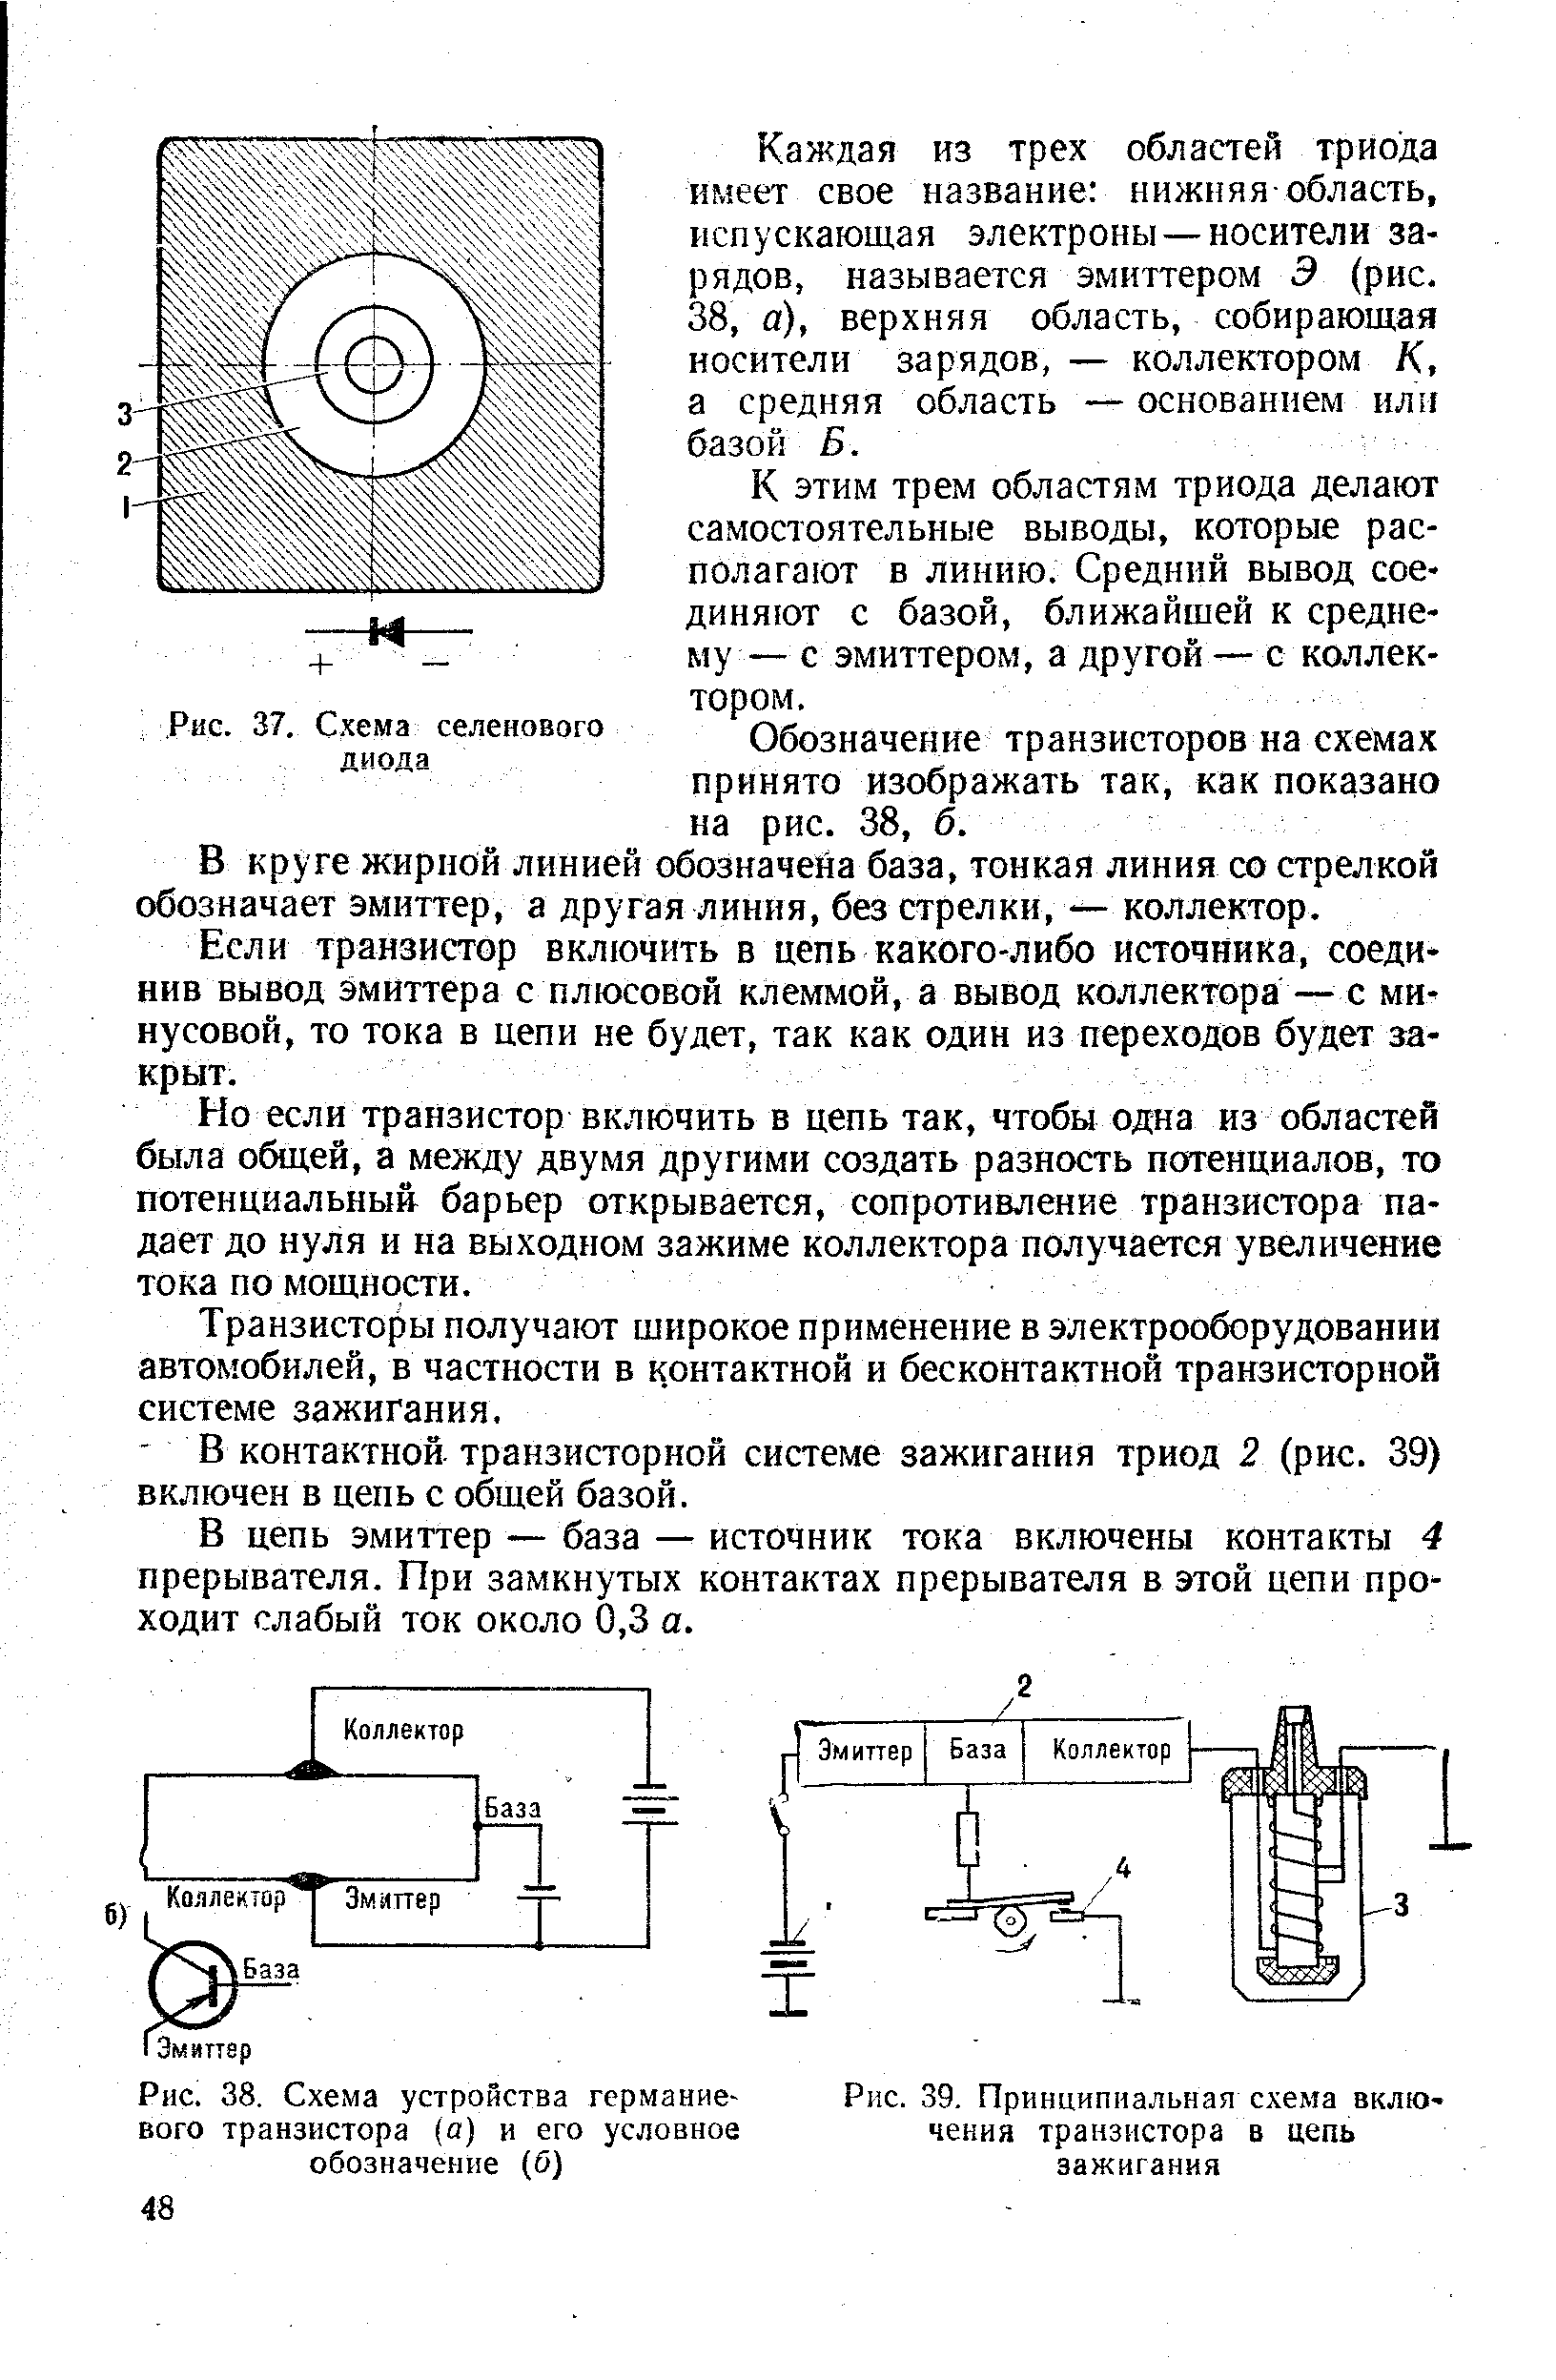 Рис. 39. Принципиальная схема включения транзистора в цепь зажигания
